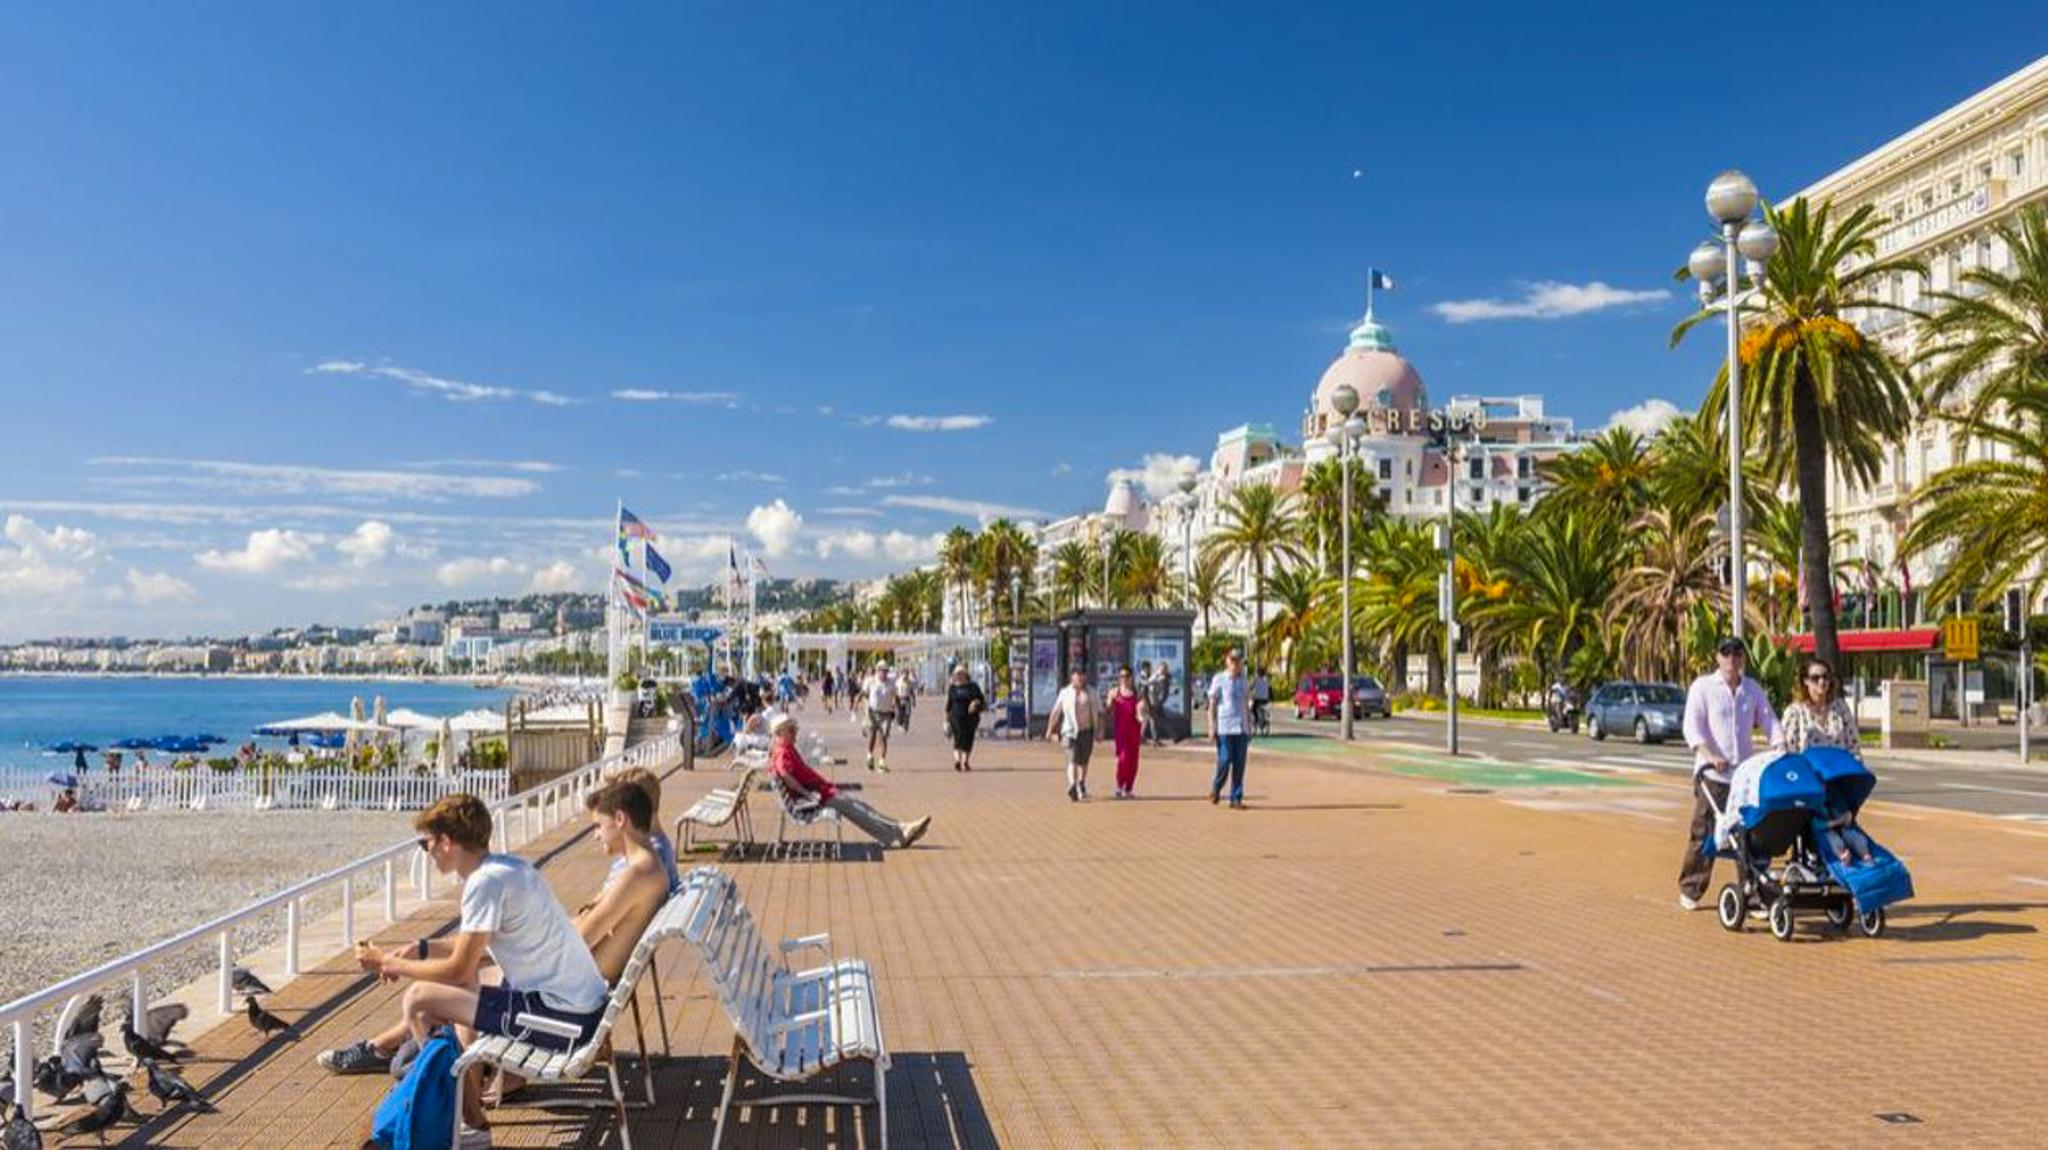 Promenade Des Anglais, A Seafront Marvel